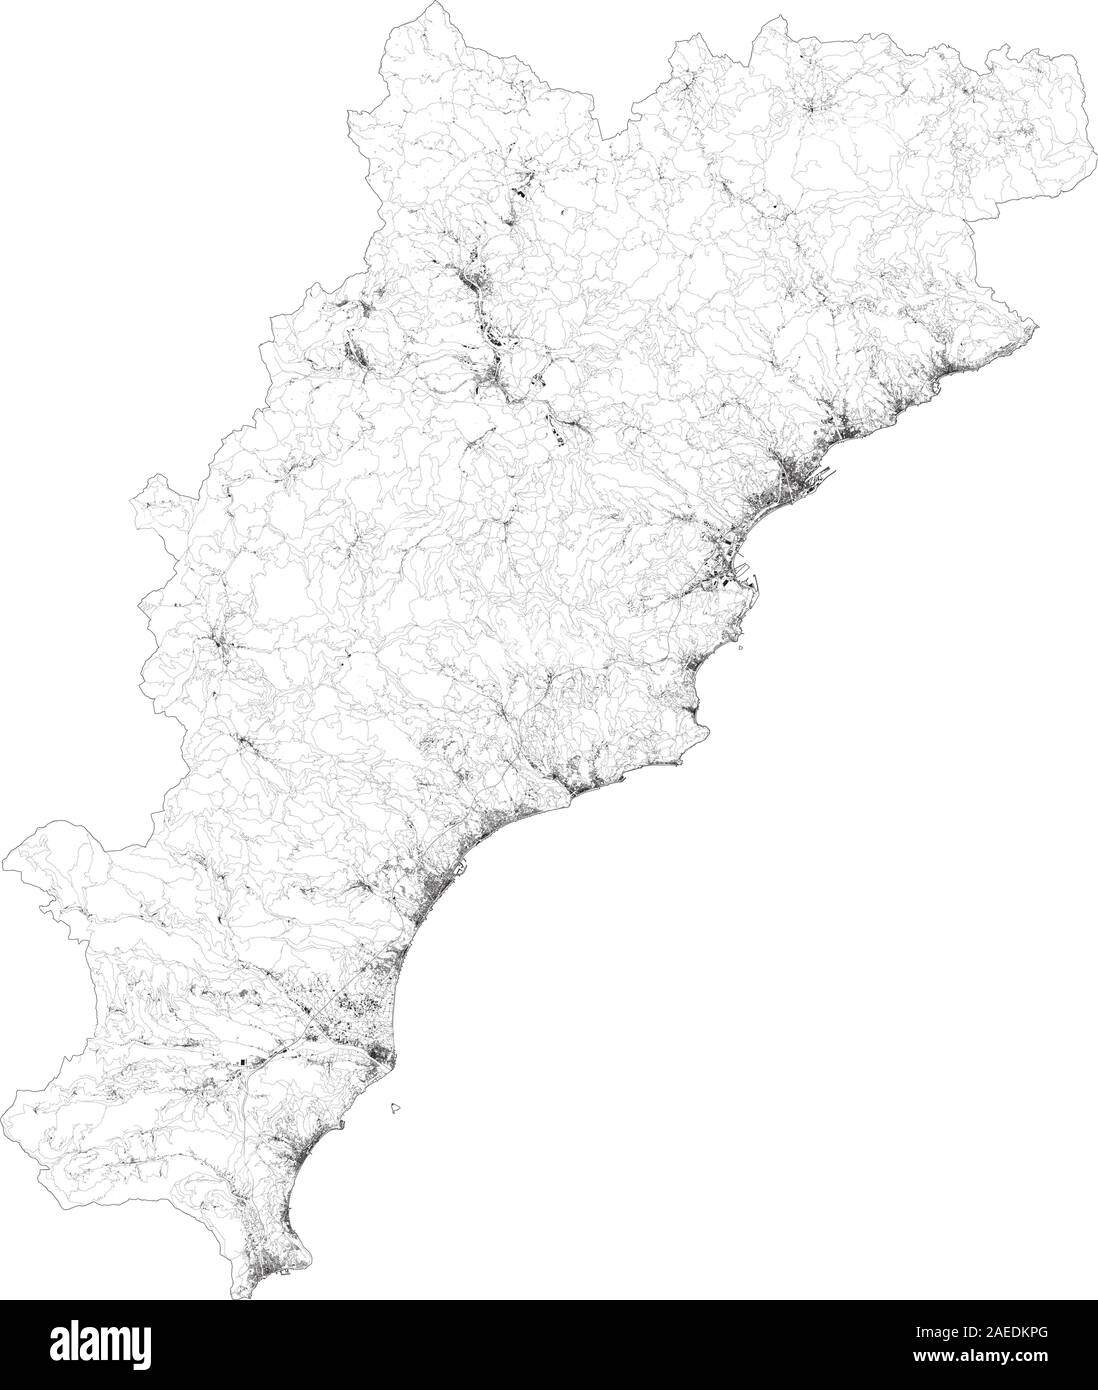 Sat-Karte der Provinz von Savona, Städte und Straßen, Gebäude und Straßen der Umgebung. Ligurien, Italien. Karte Straßen, Ringstraßen Stock Vektor